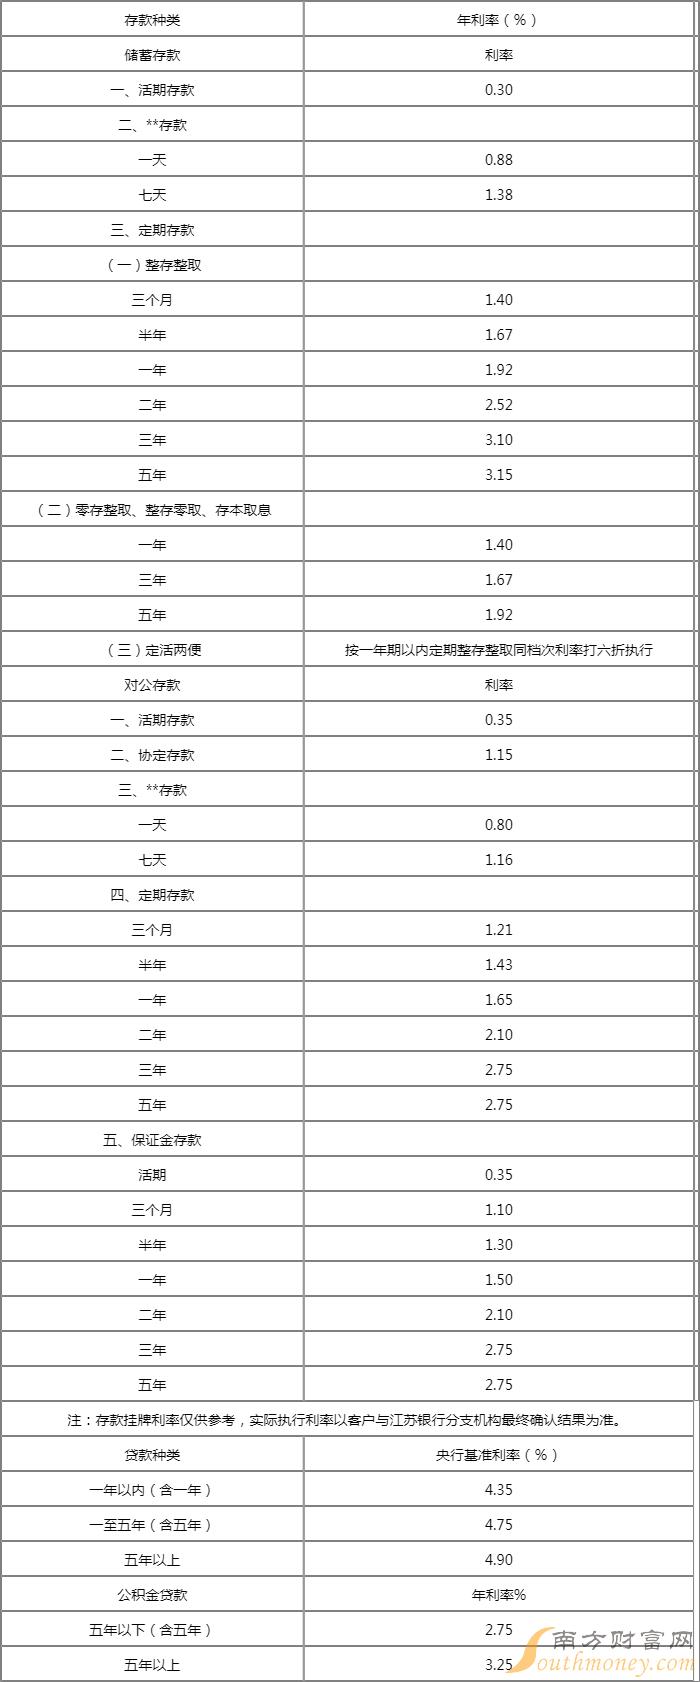 2022年江苏银行公积金贷款利率表调整查询